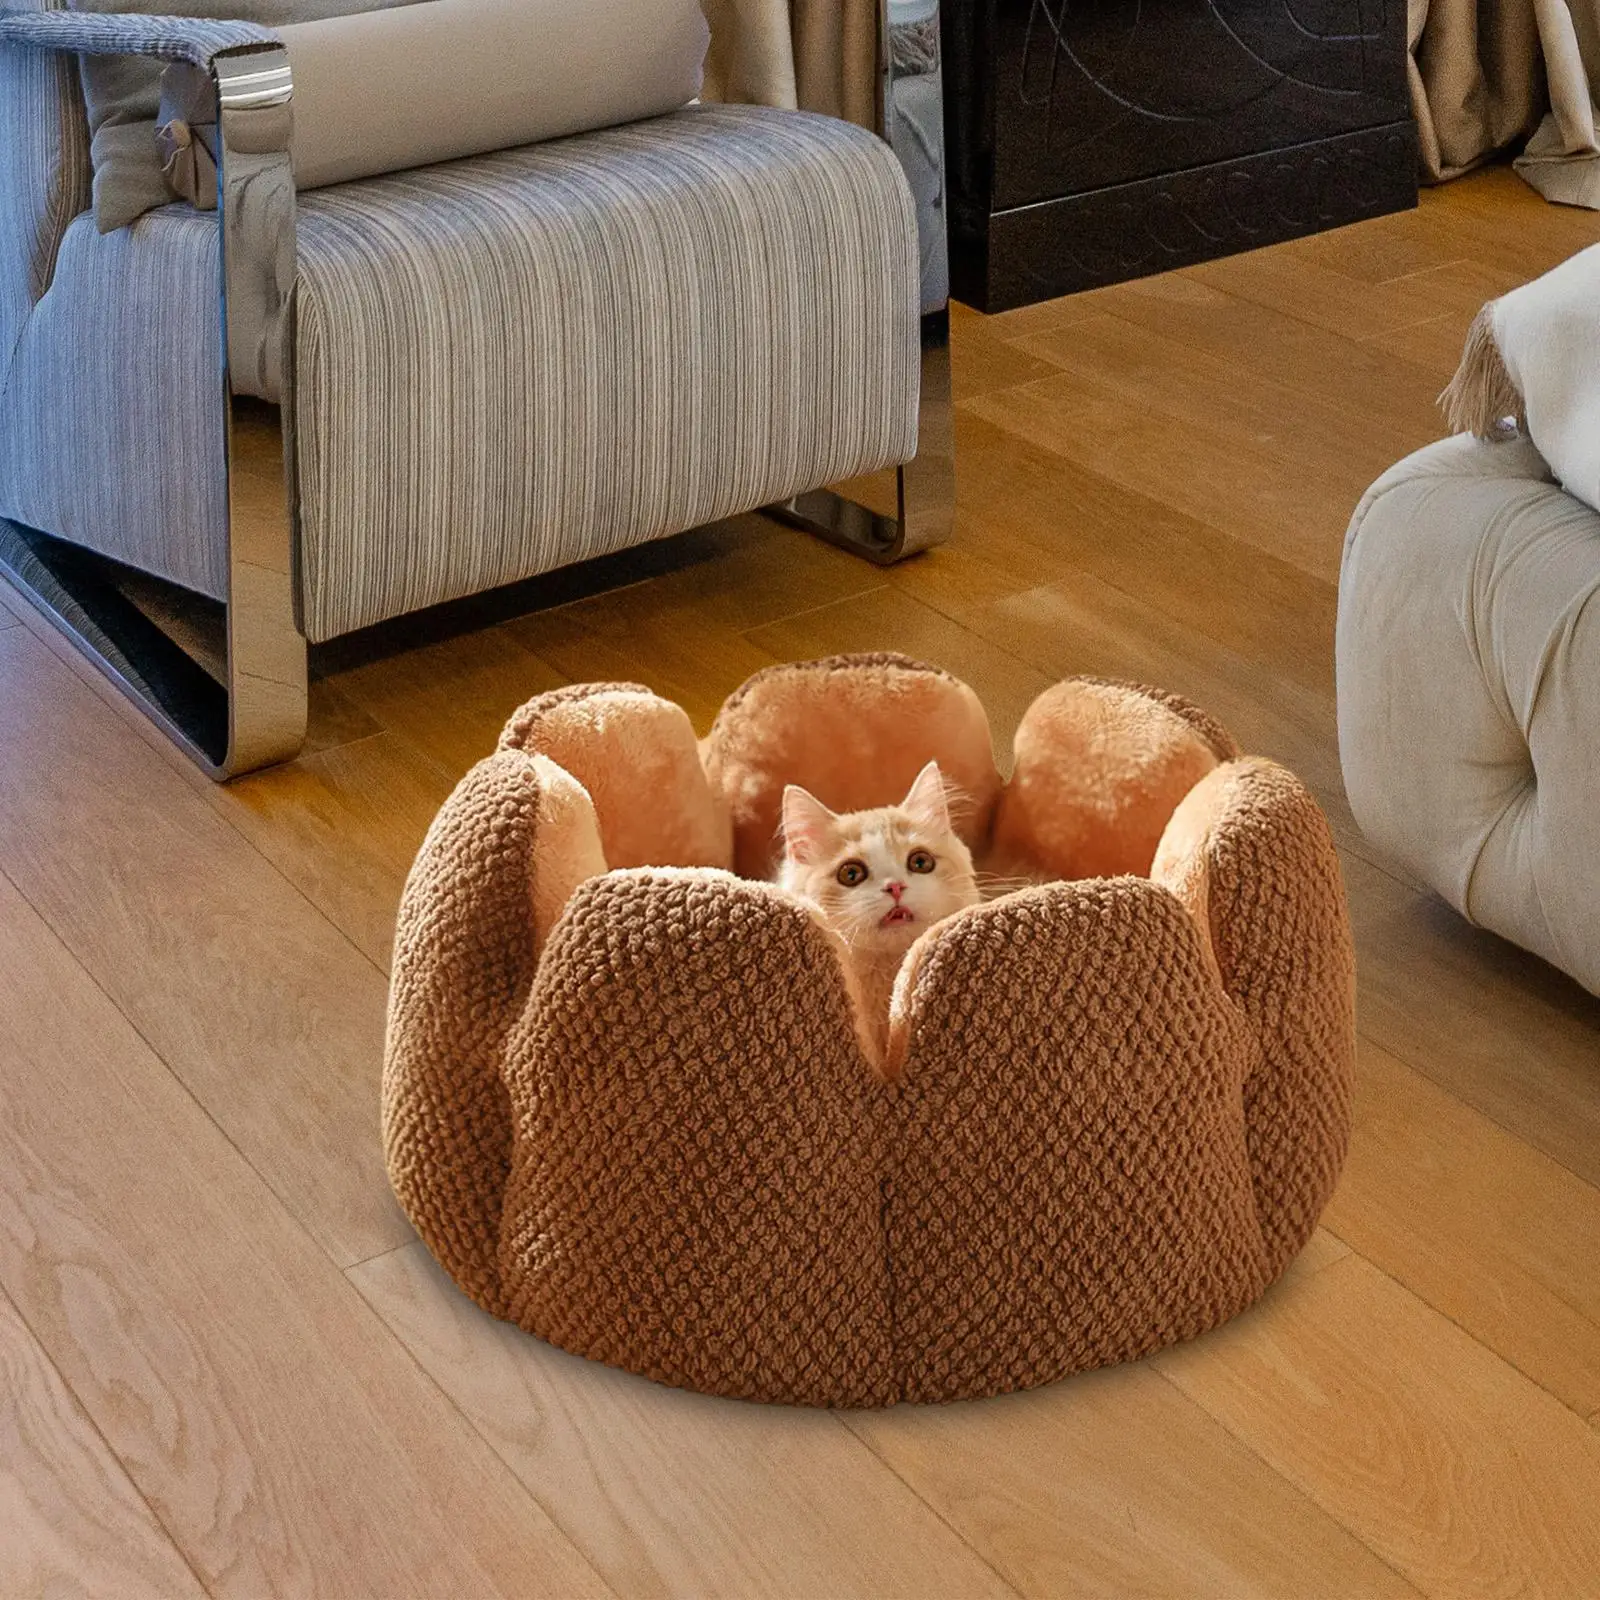 Warm Pet Bed Mat Sleeping Pad Cushion Soft Pet Supplies Blanket Flower Shape Accessories Mattress for Kitty Cats Puppy Kitten